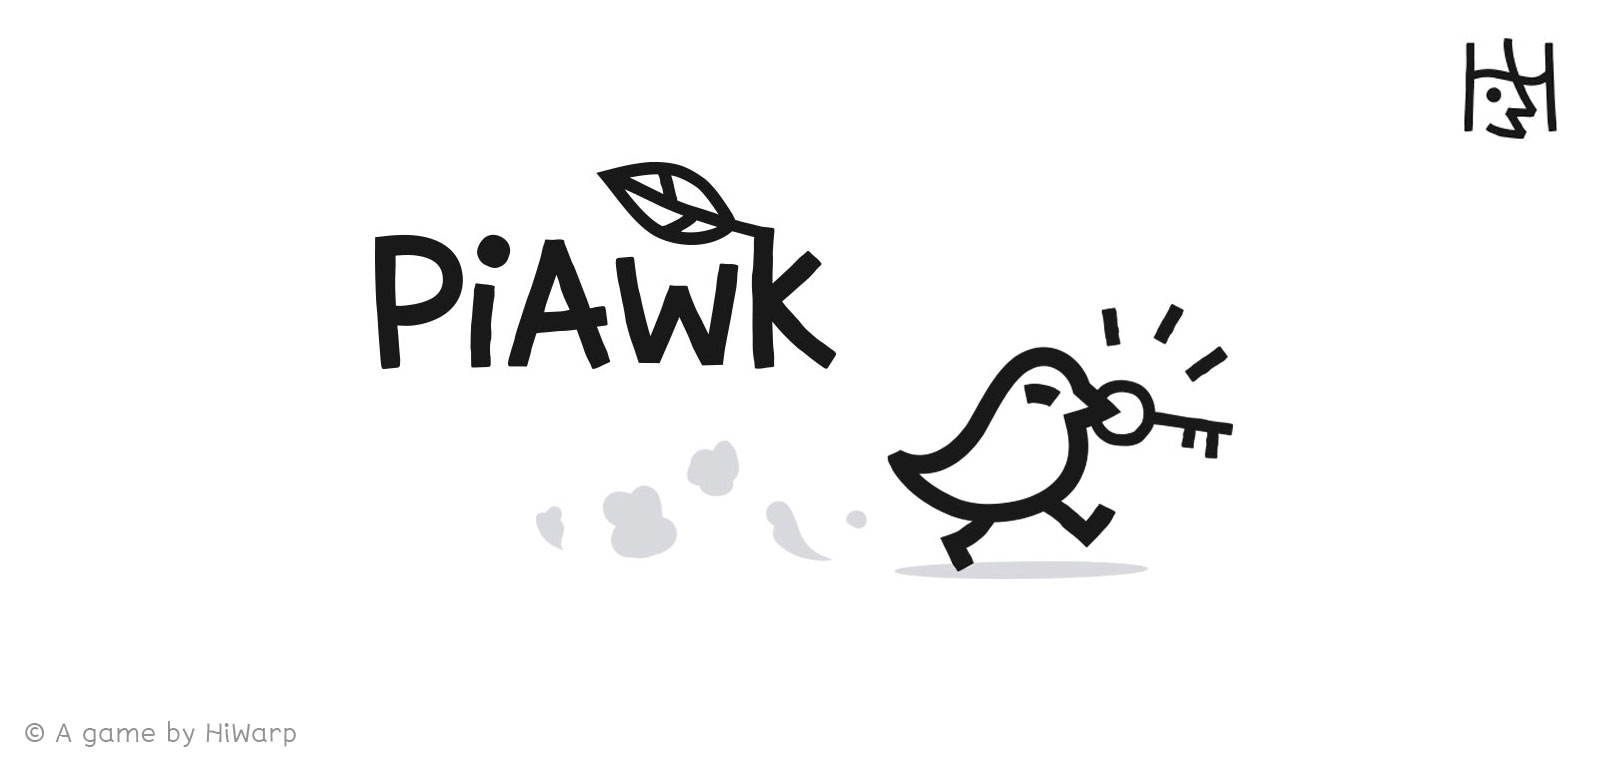 PiAwk